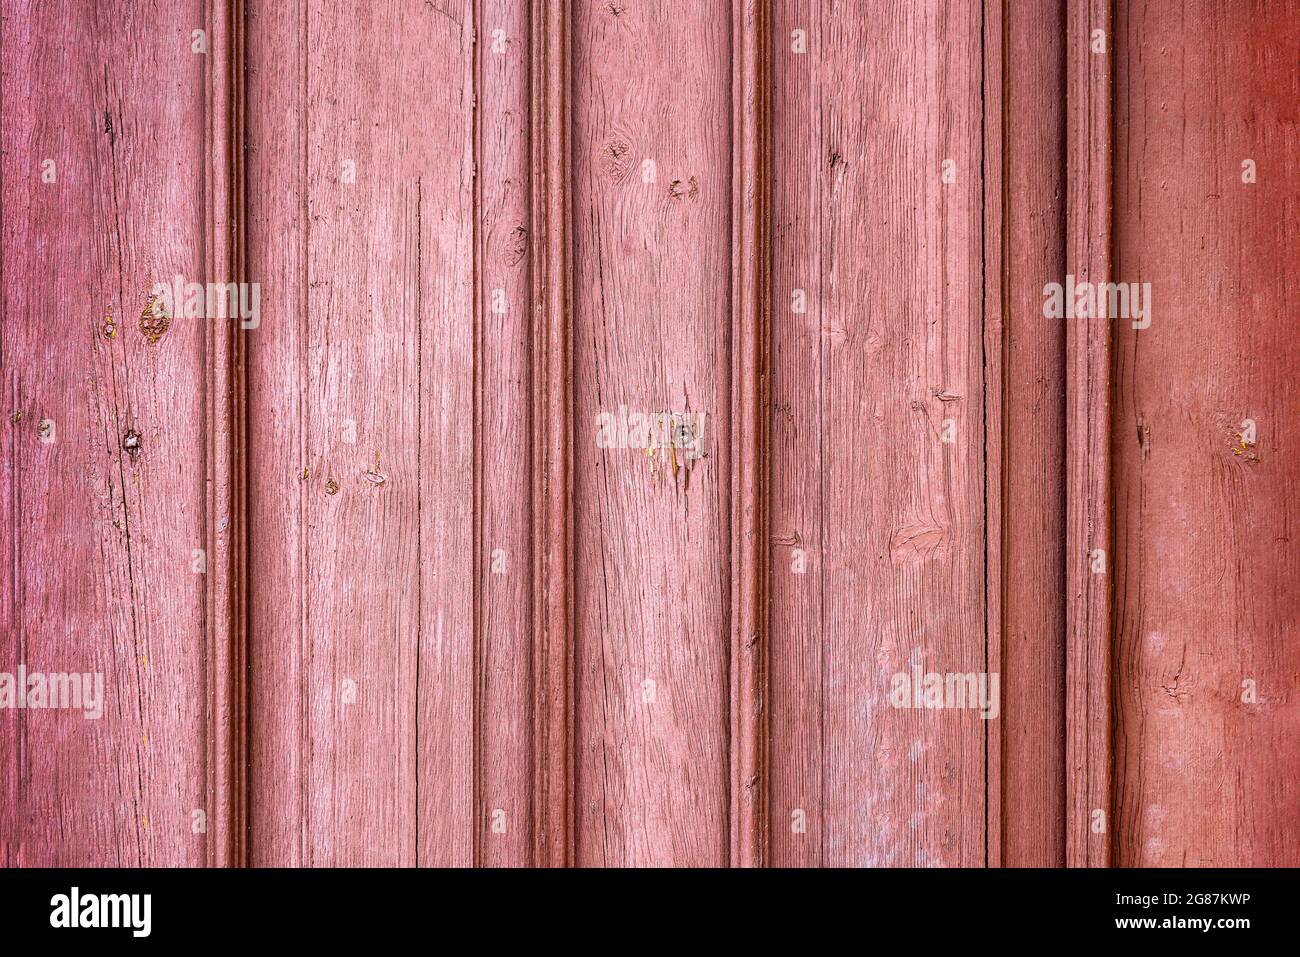 Rote Holzplanken oder Zaun Textur Hintergrund oder Hintergrund mit alter Farbe. Hintergrund für Design oder Postkarten Stockfoto